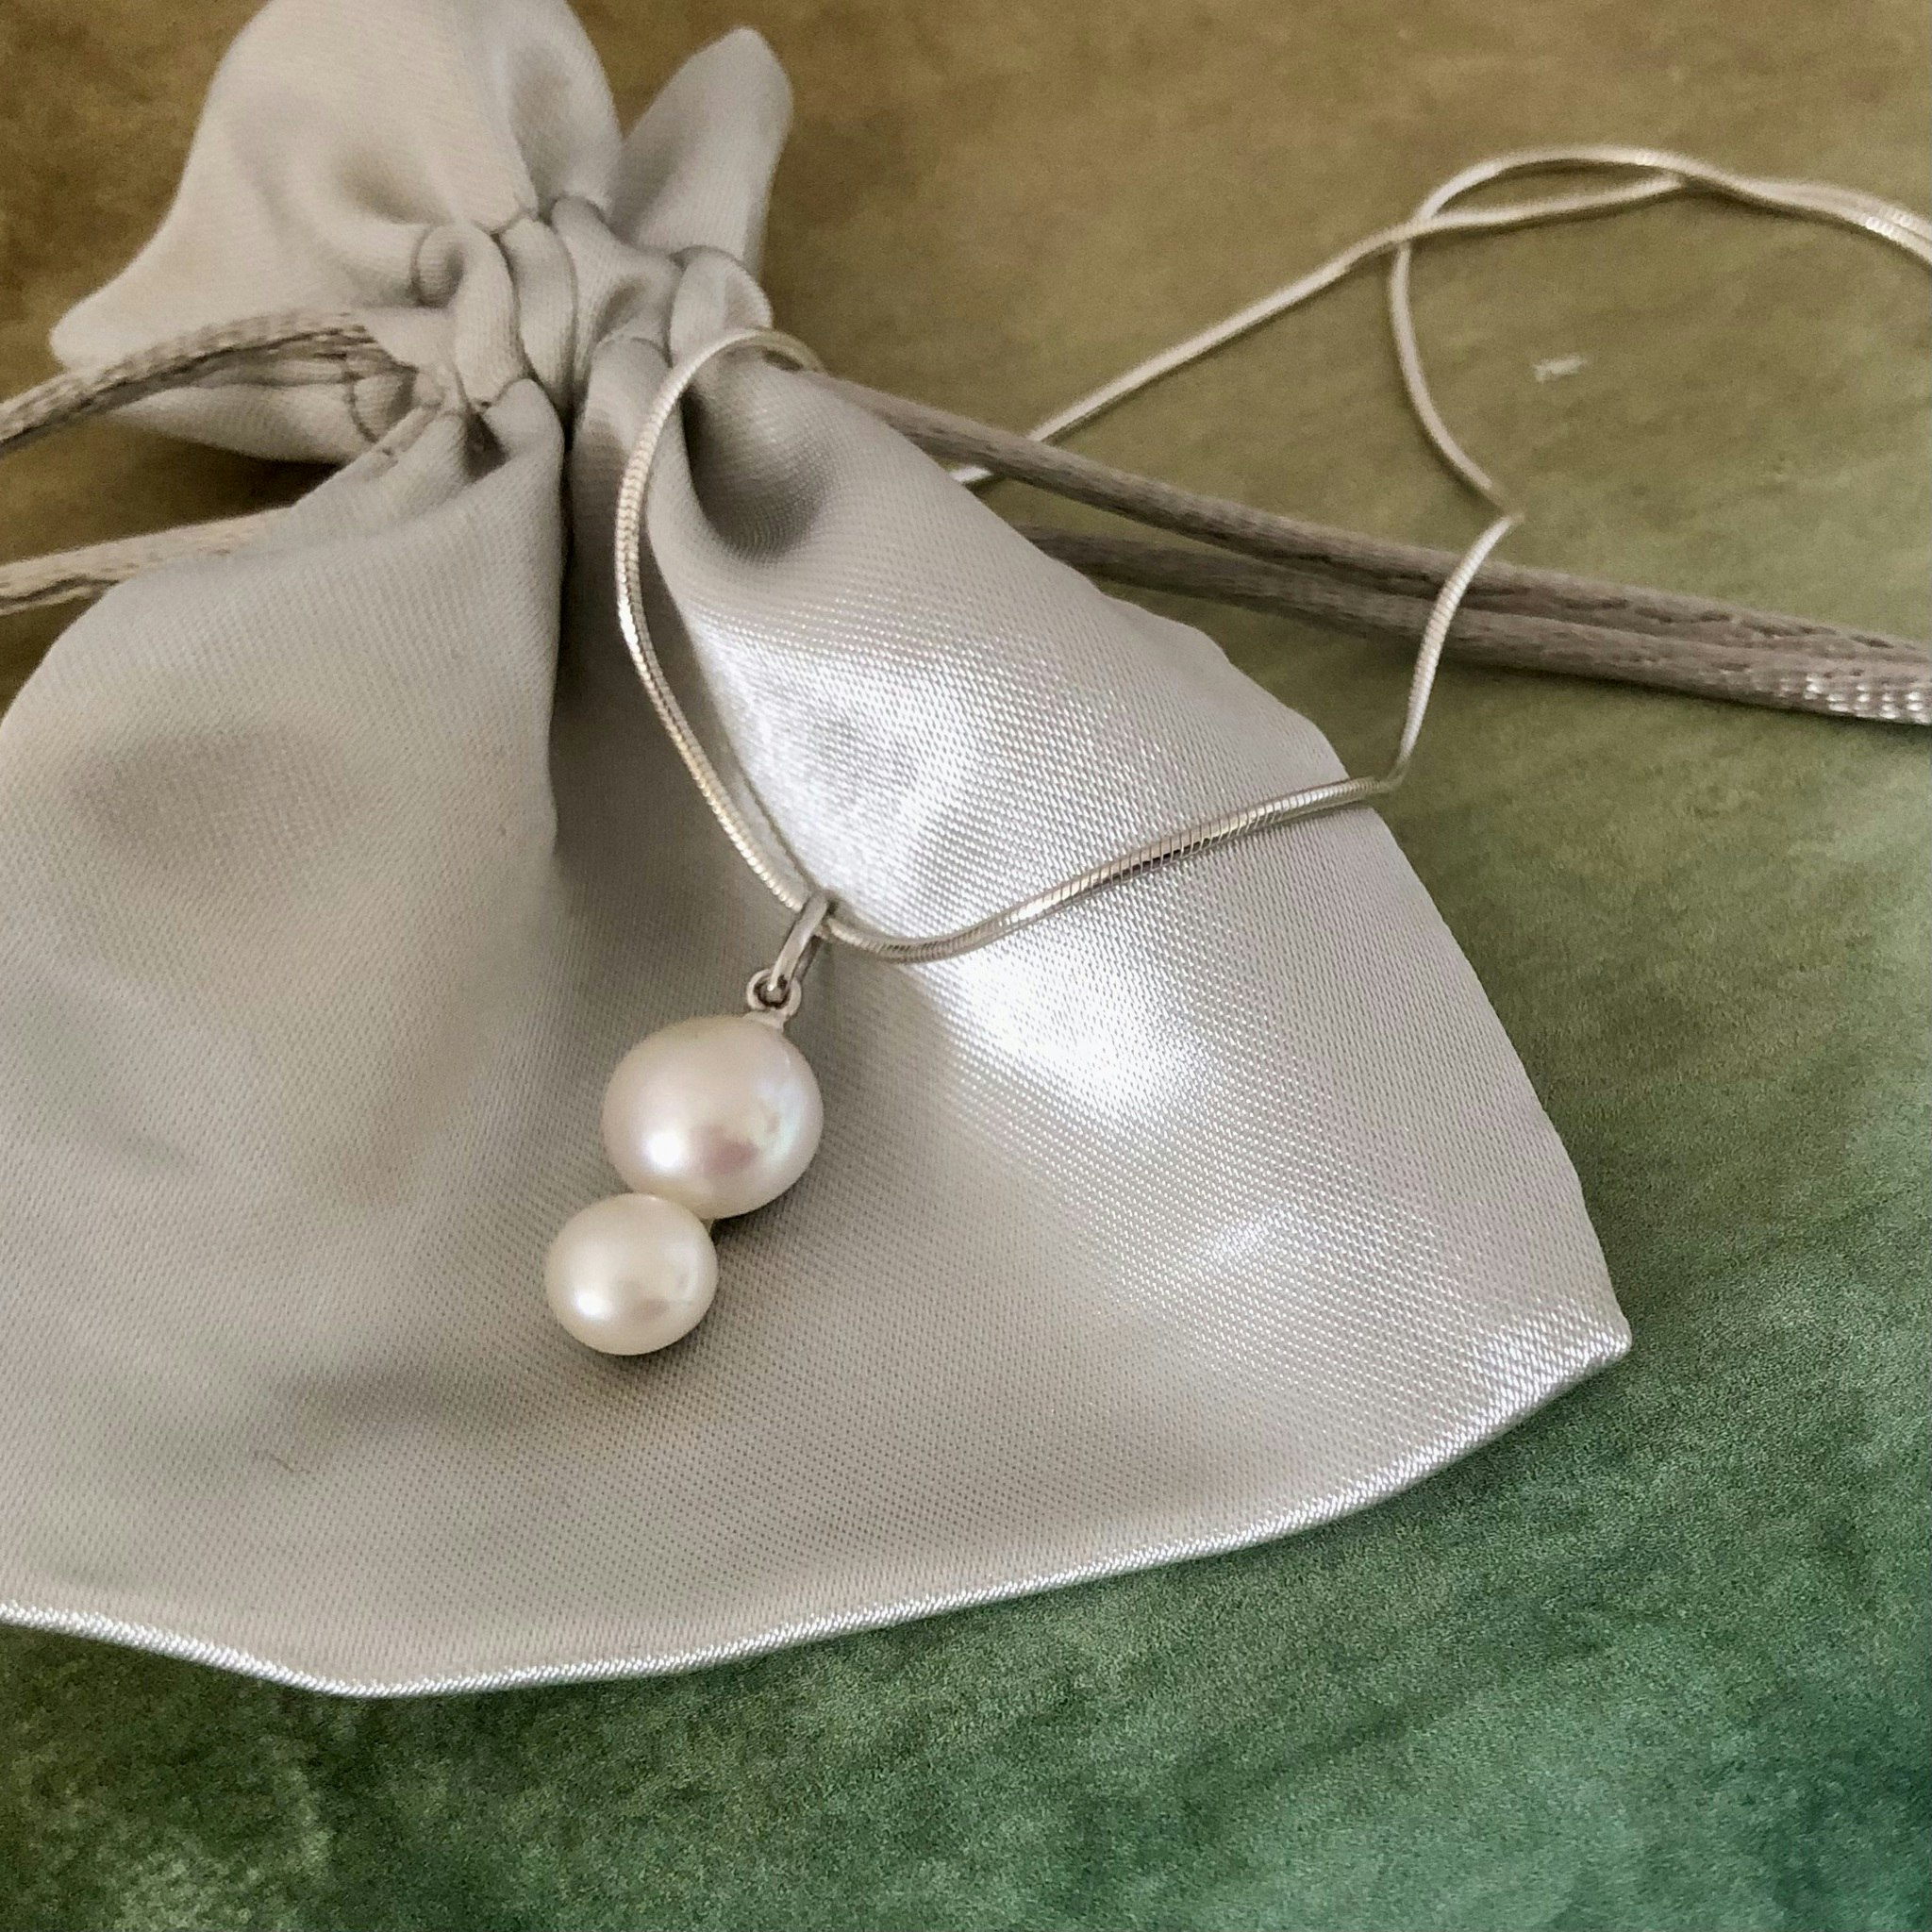 Enya - Stilfullt hänge med två pärlor